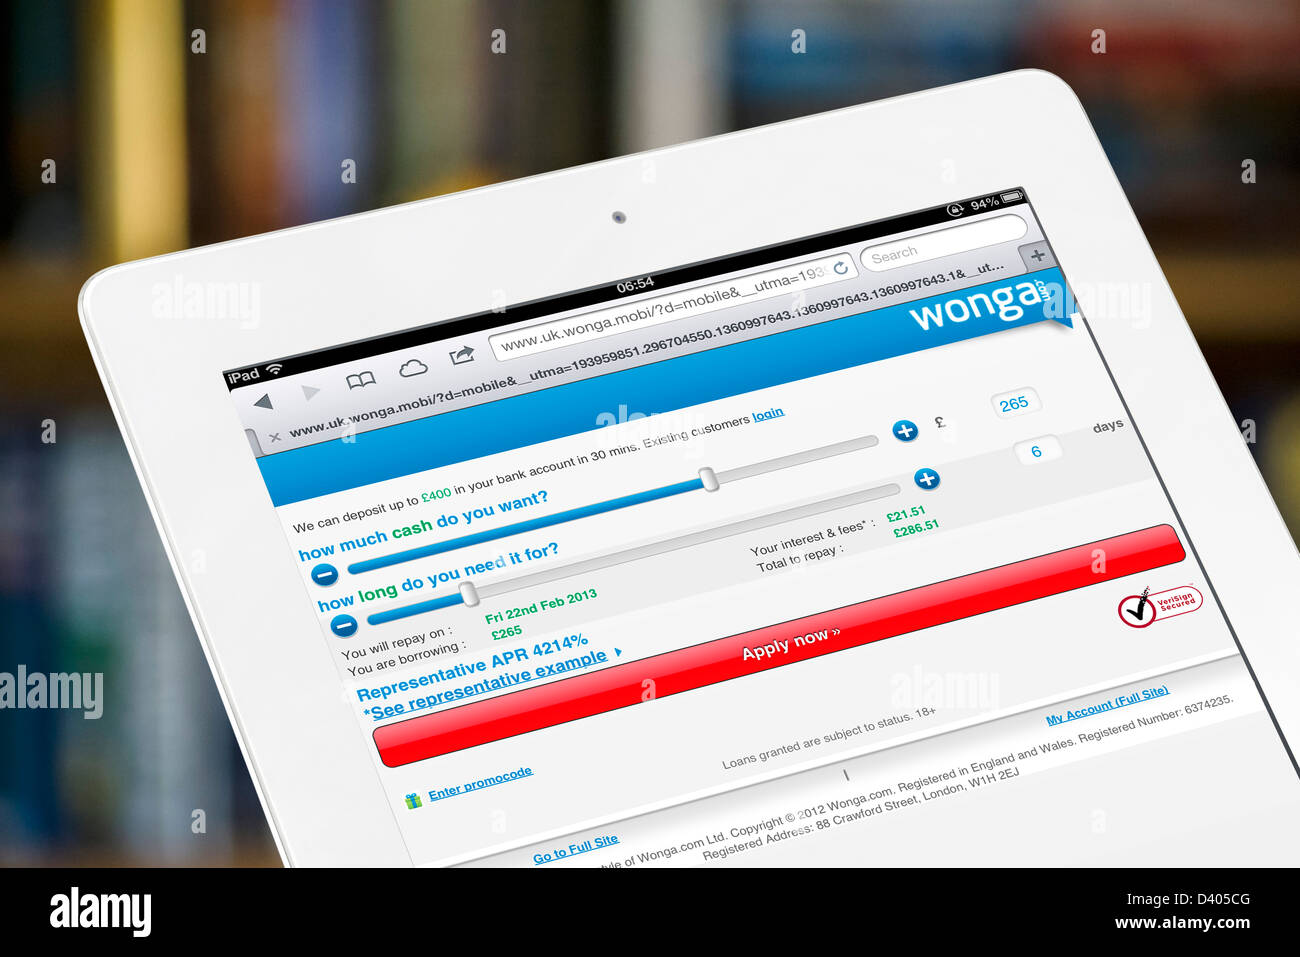 Domanda di prestito calcolatrice sul Wonga.com paday sito prestito visualizzati su una quarta generazione di iPad, REGNO UNITO Foto Stock